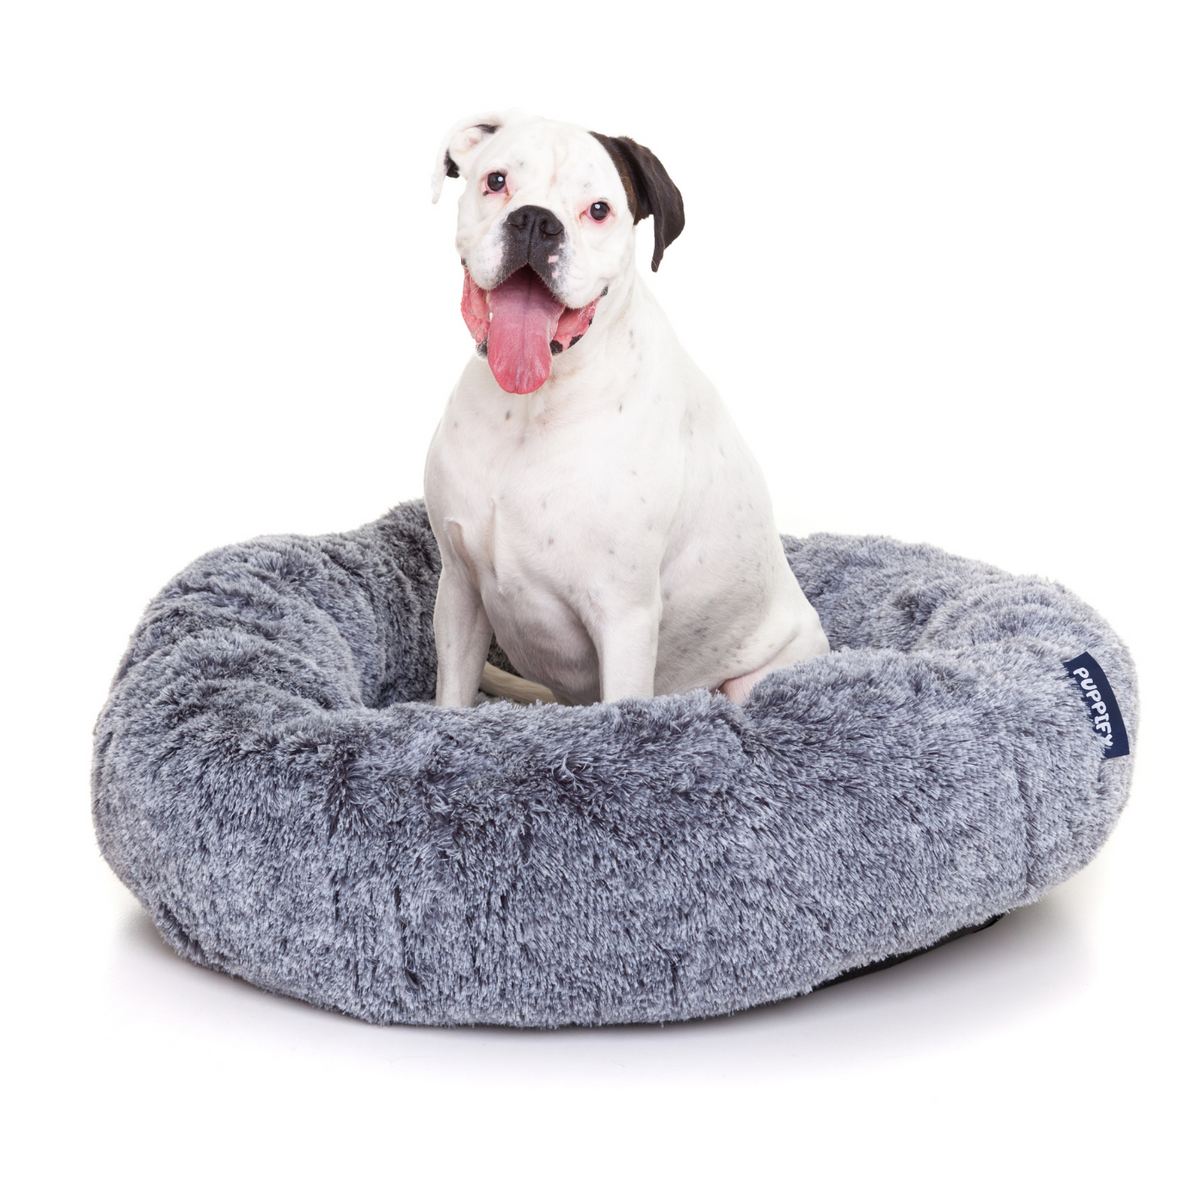 Extra gevulde hondenmand van Puppify voor een zachte en comfortabele rustplek.